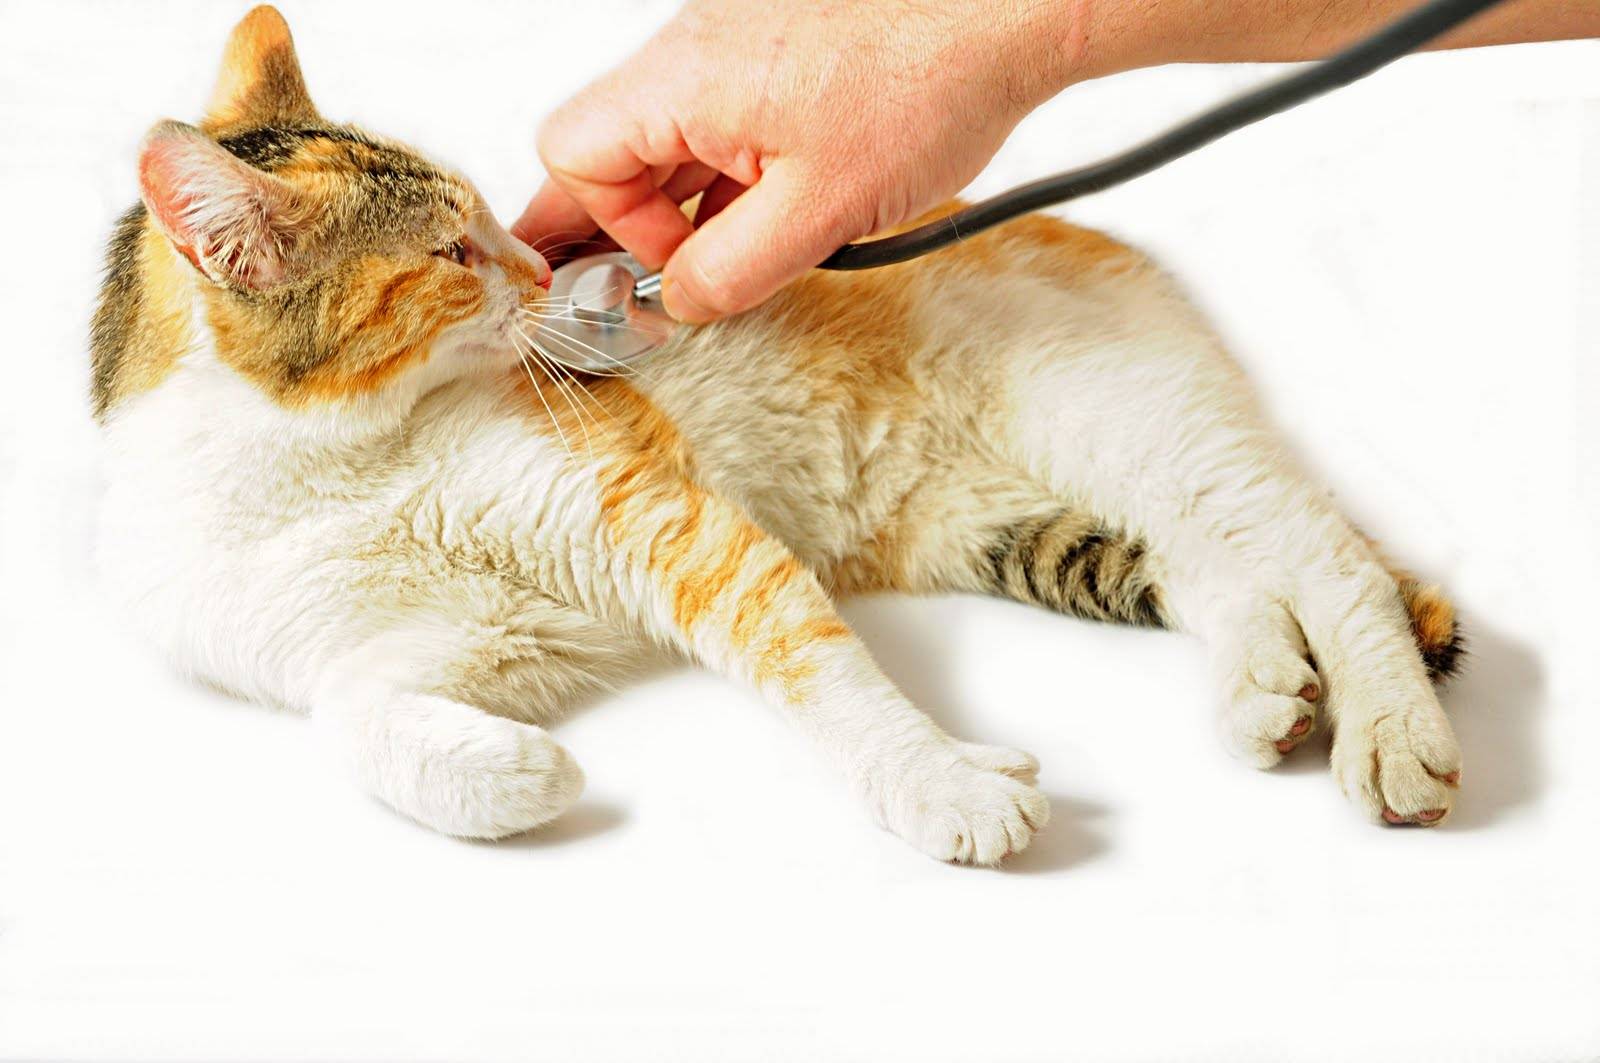 Почечная недостаточность у кошек: симптомы, лечение, питание.